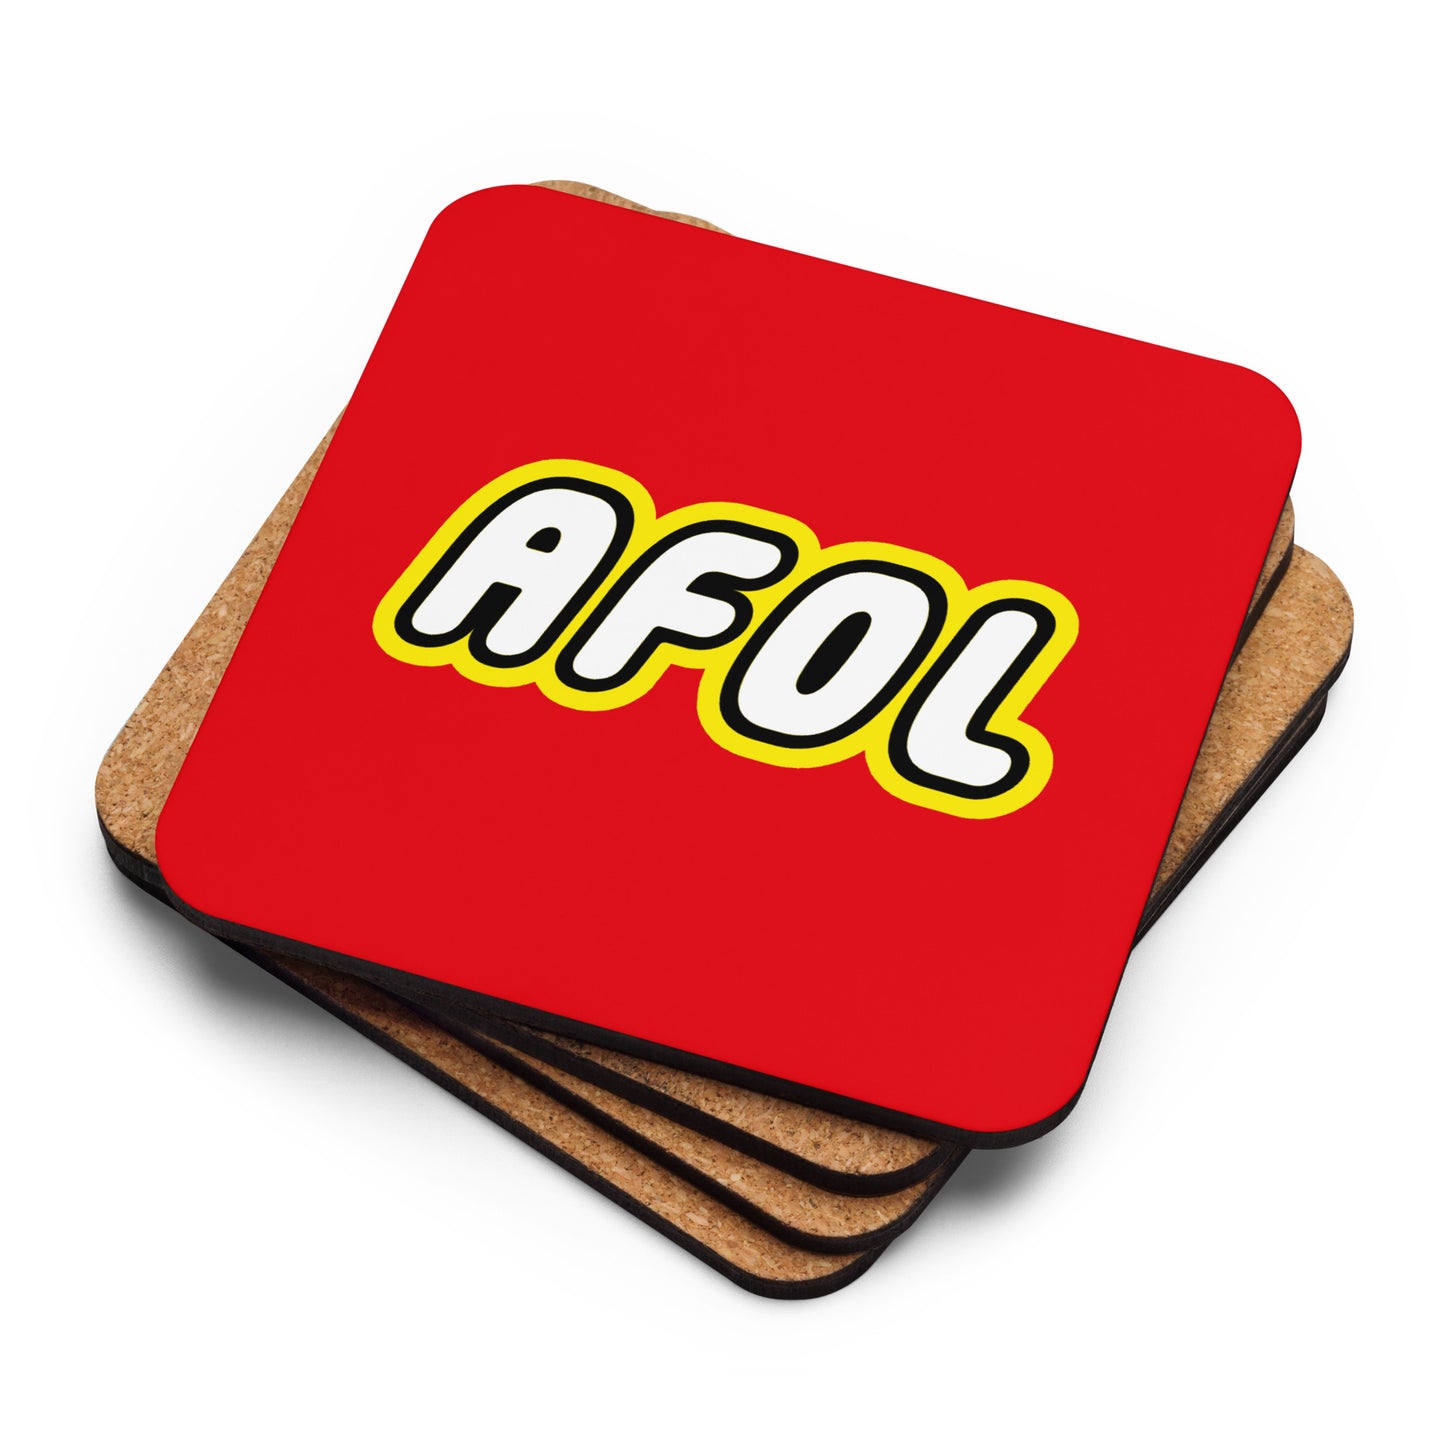 AFOL (Adult Fan of Lego) Single Cork-Back Coaster